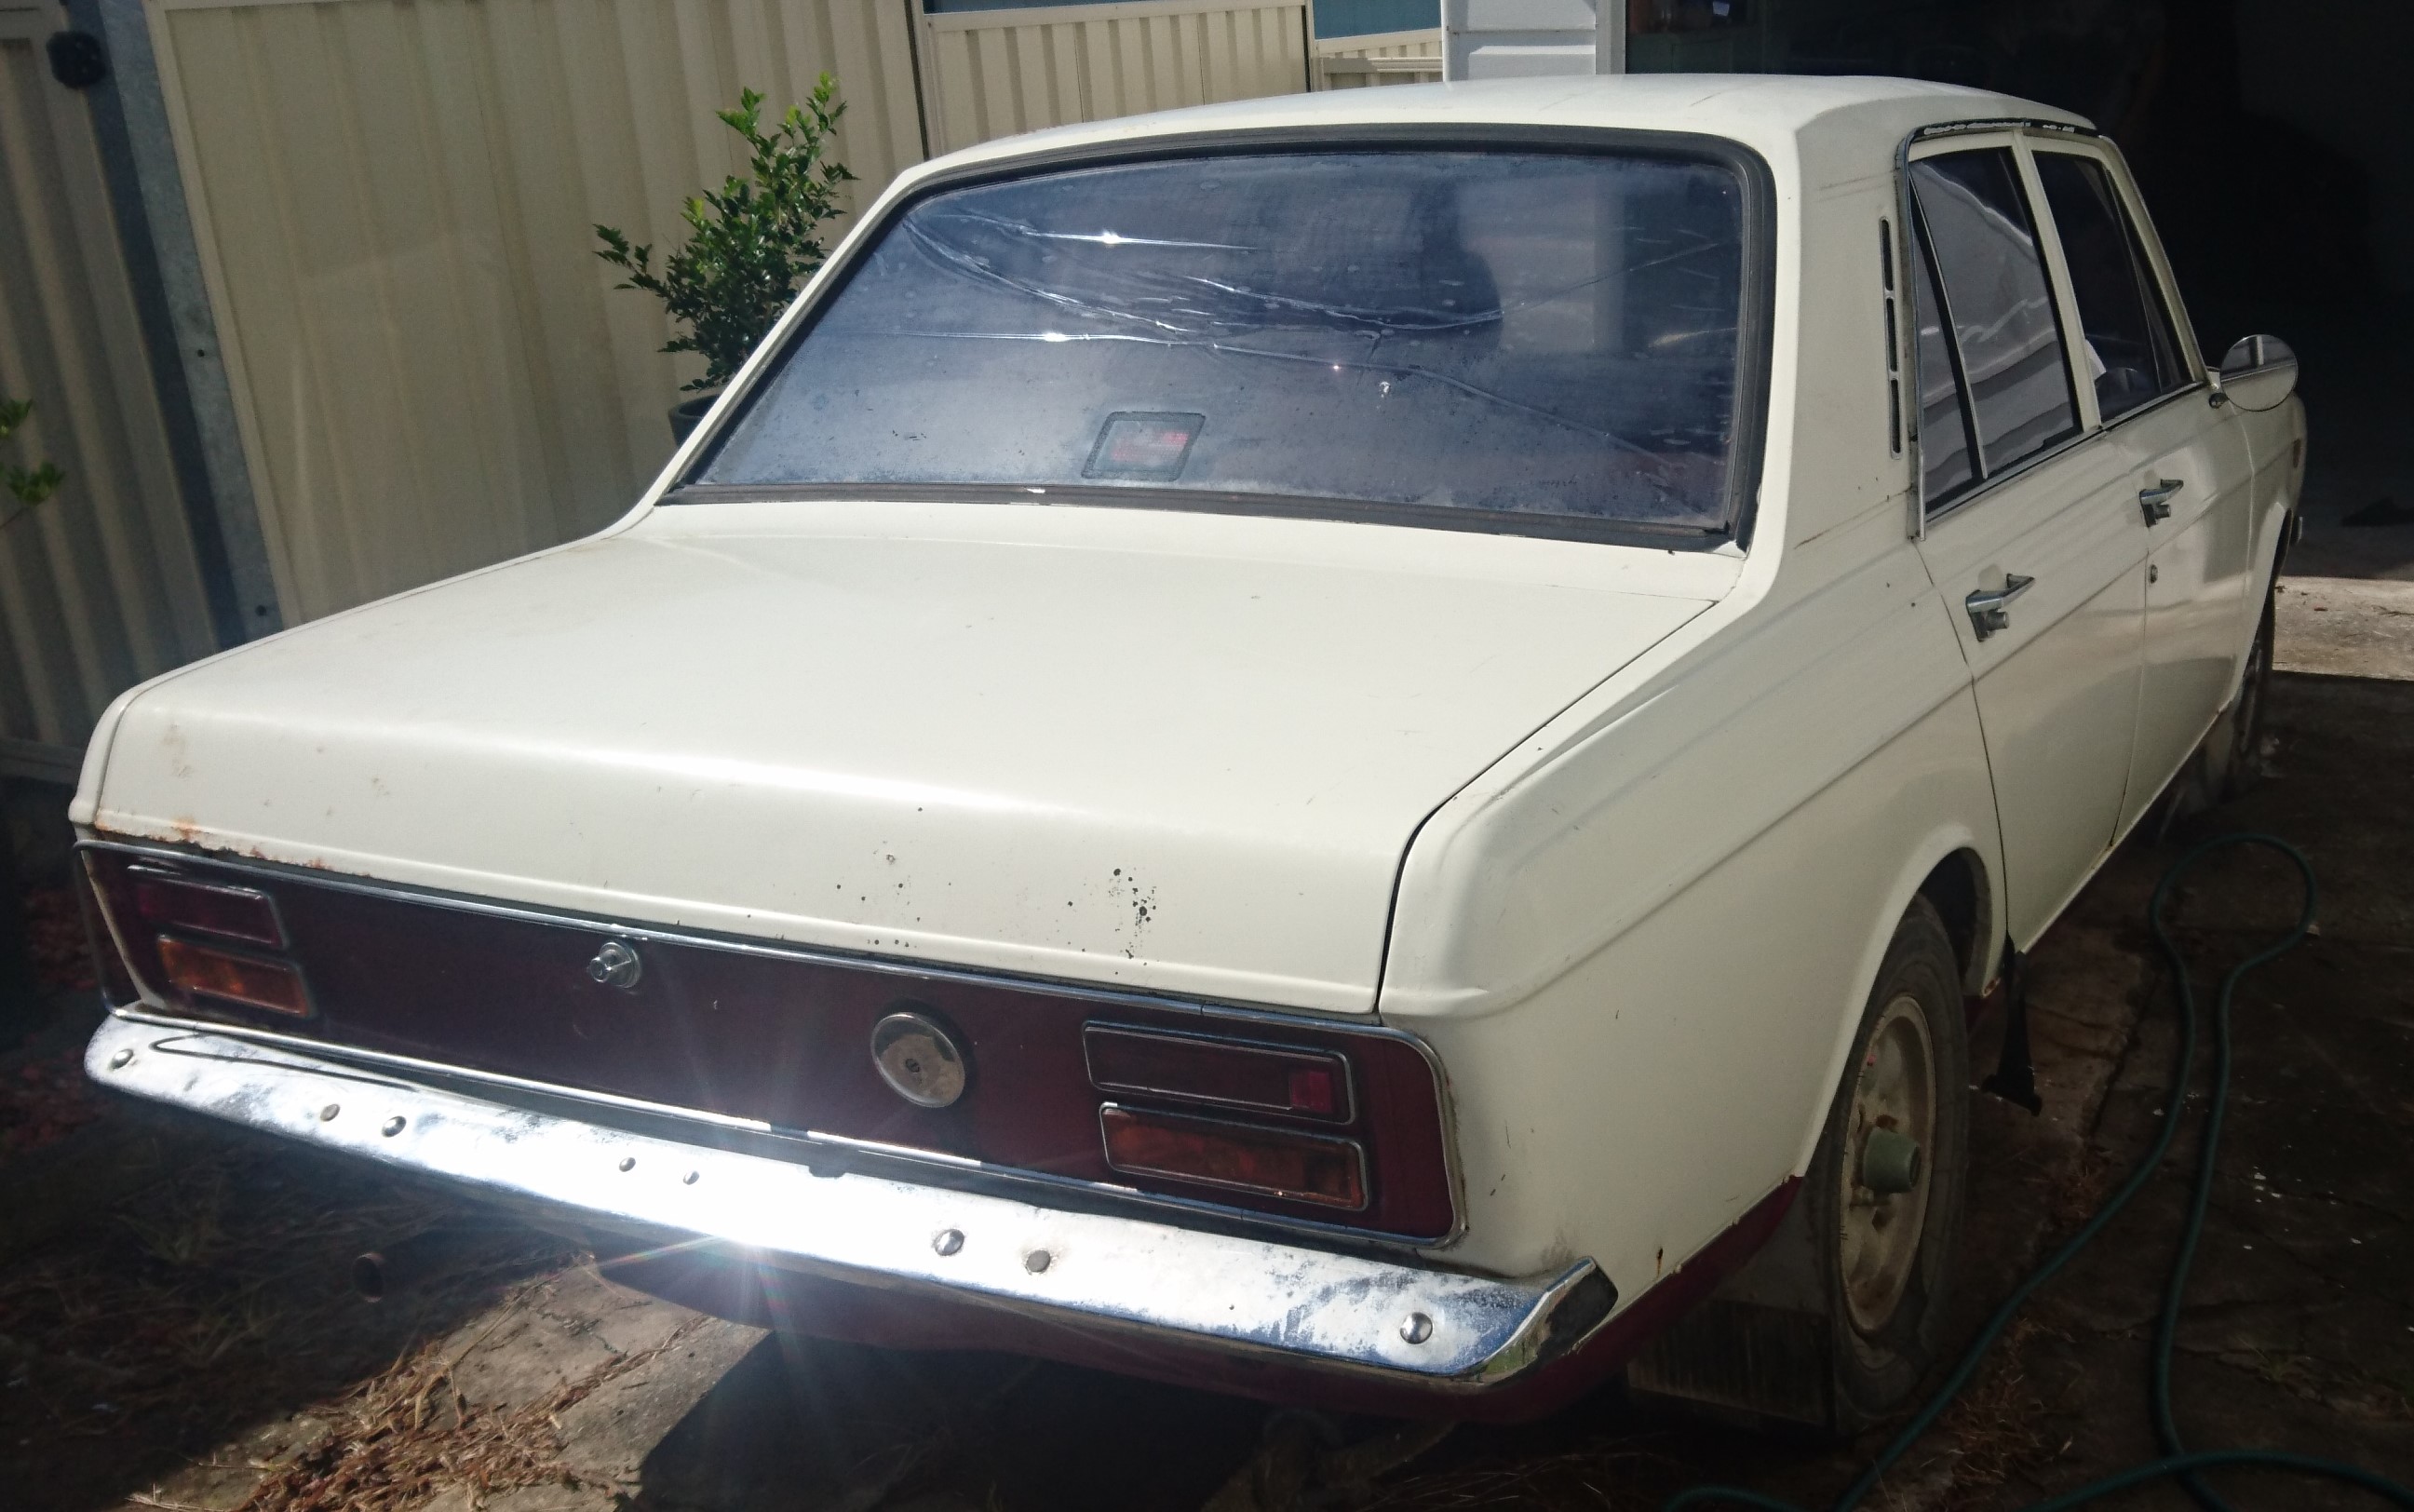 White_Chrysler_Valiant_HE_660_GT_Hillman_Hunter_car_for_sale_Australia(4)